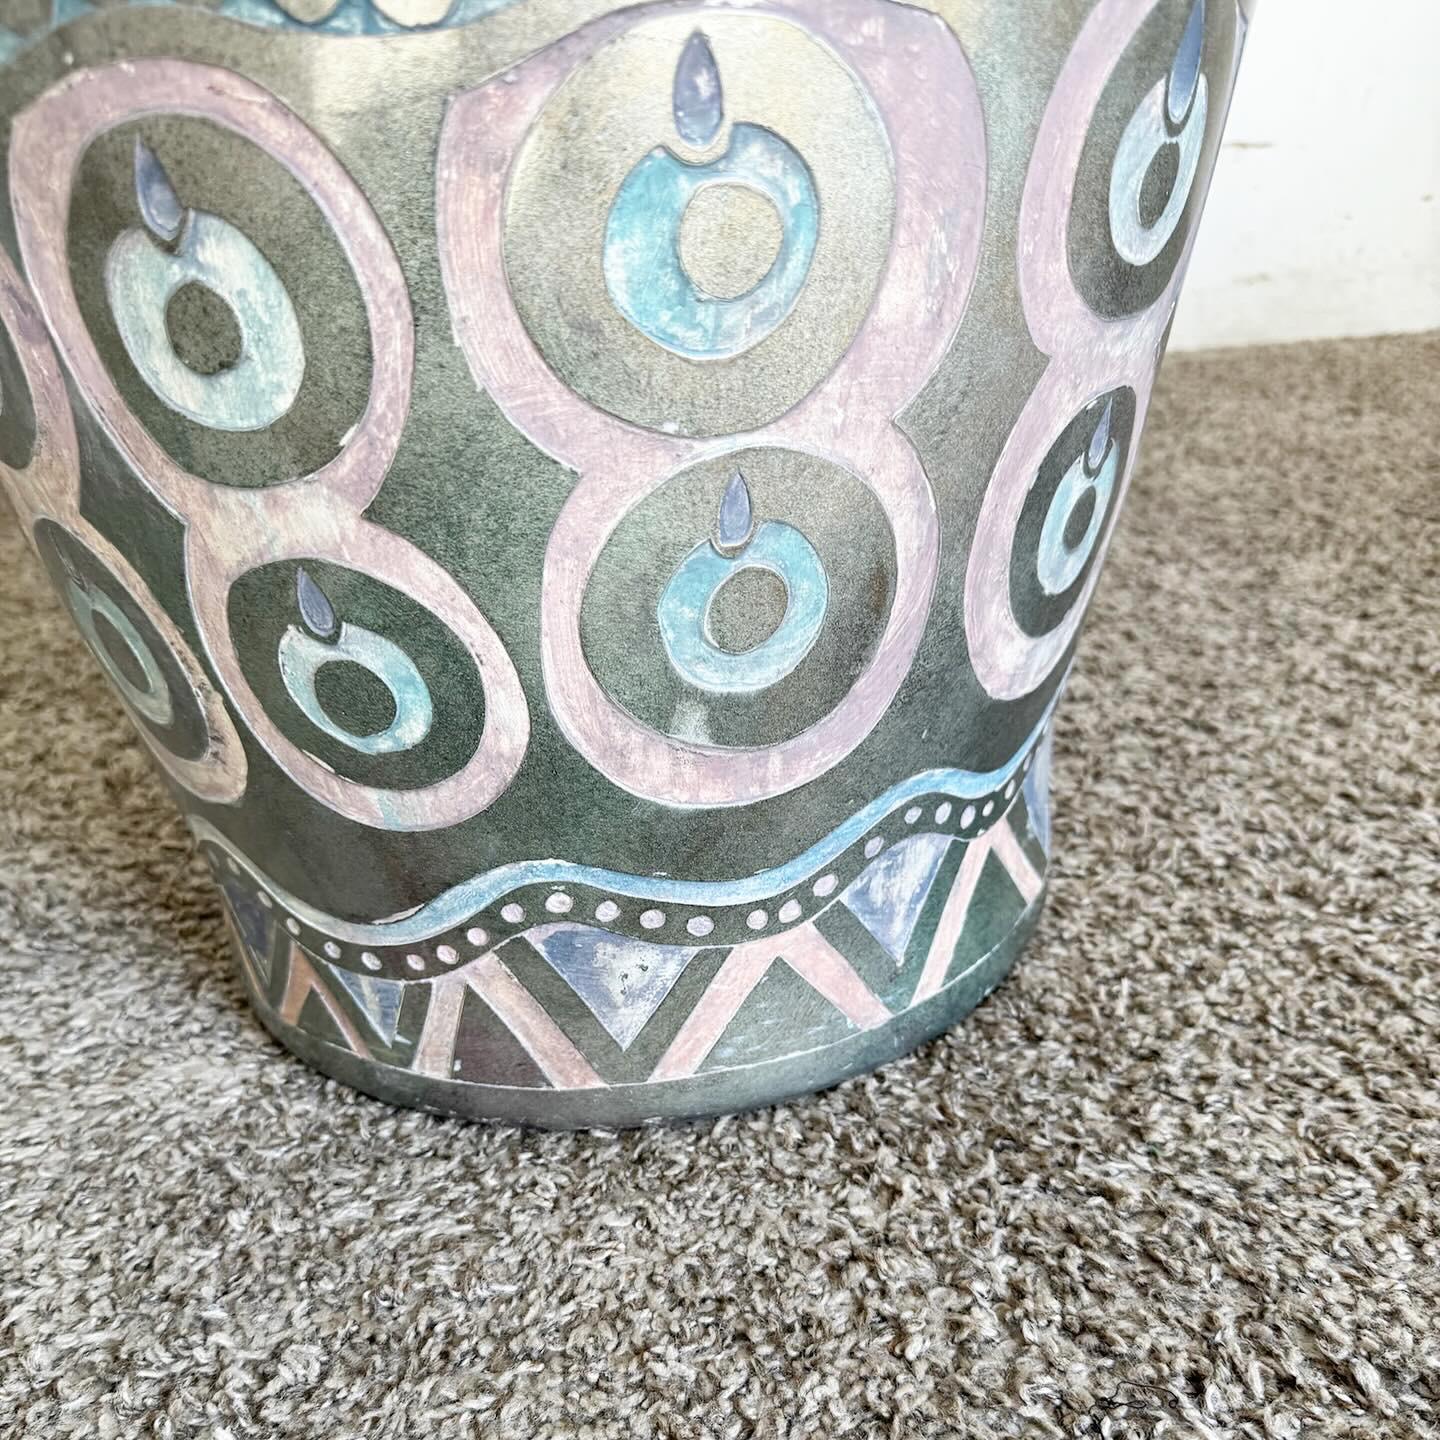 Heben Sie Ihren Raum mit der Postmodern Hand Painted and Carved Large Floor Vase auf, ein wahres künstlerisches Statement. Diese Vase zeigt kräftige Farben und abstrakte Motive, die typisch für die Postmoderne sind, mit handgeschnitzten Details, die